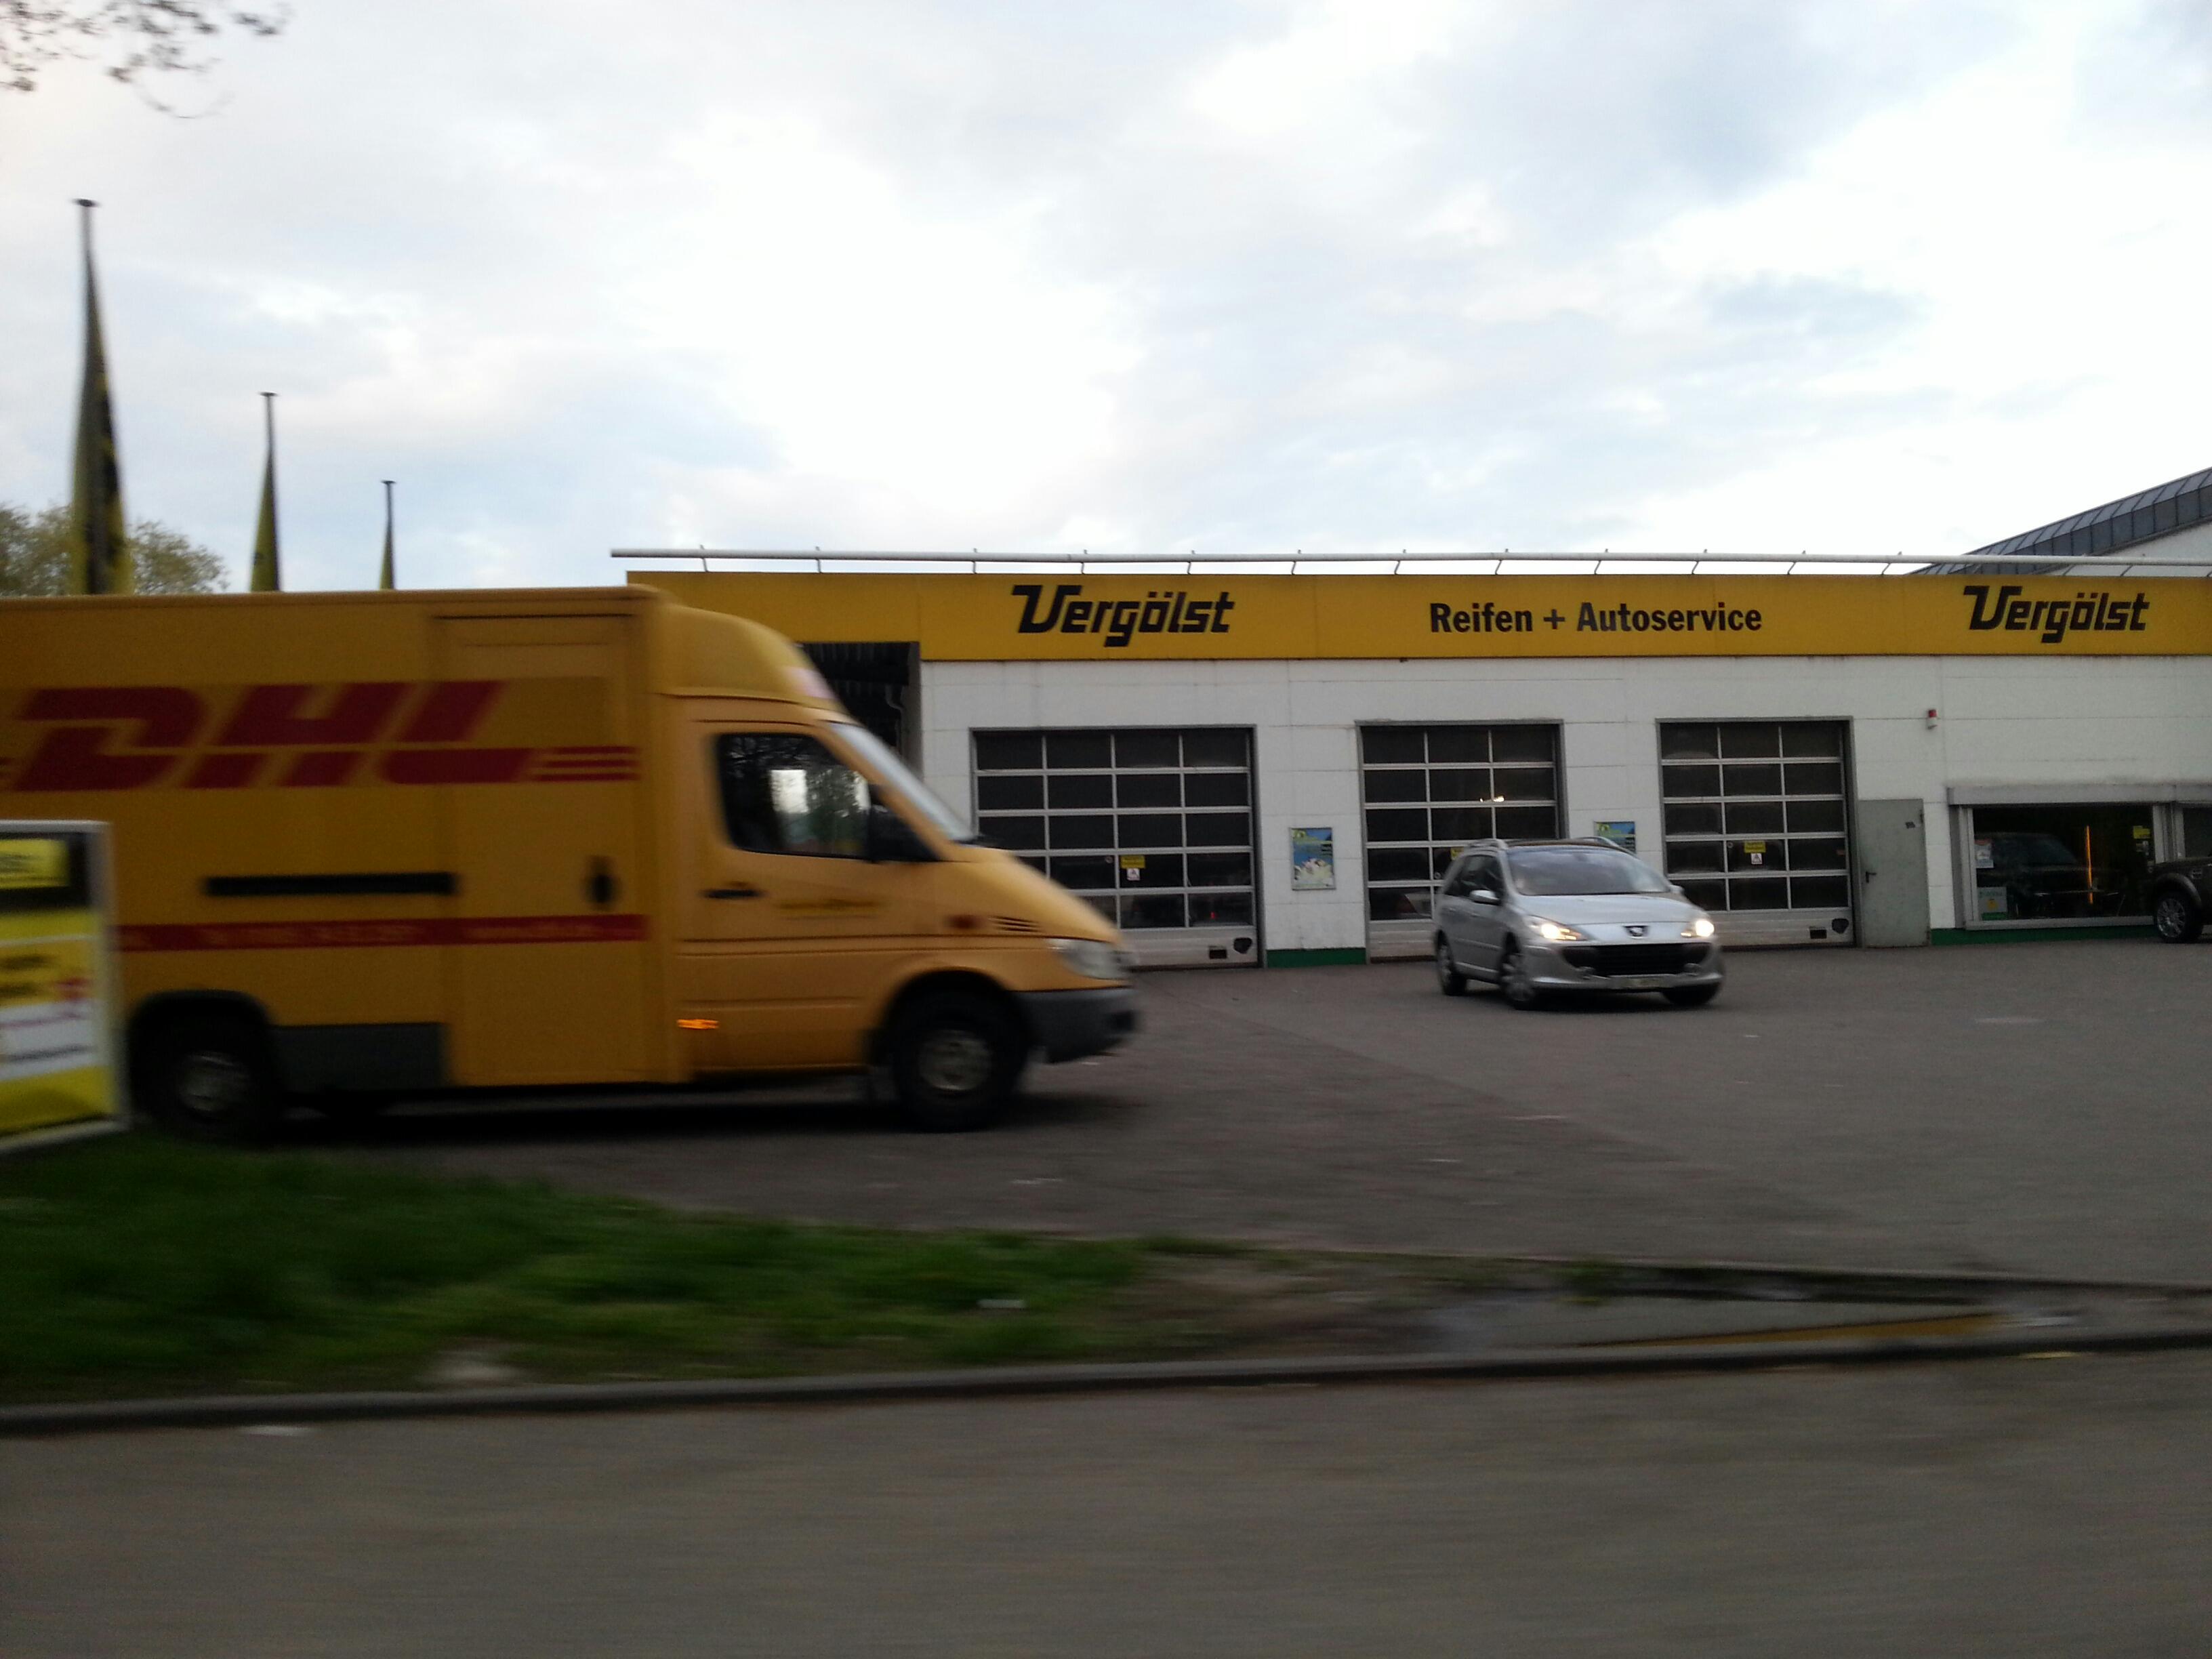 ➤ Vergölst GmbH Reifen + Autoservice 79539 Lörrach Öffnungszeiten | Adresse  | Telefon